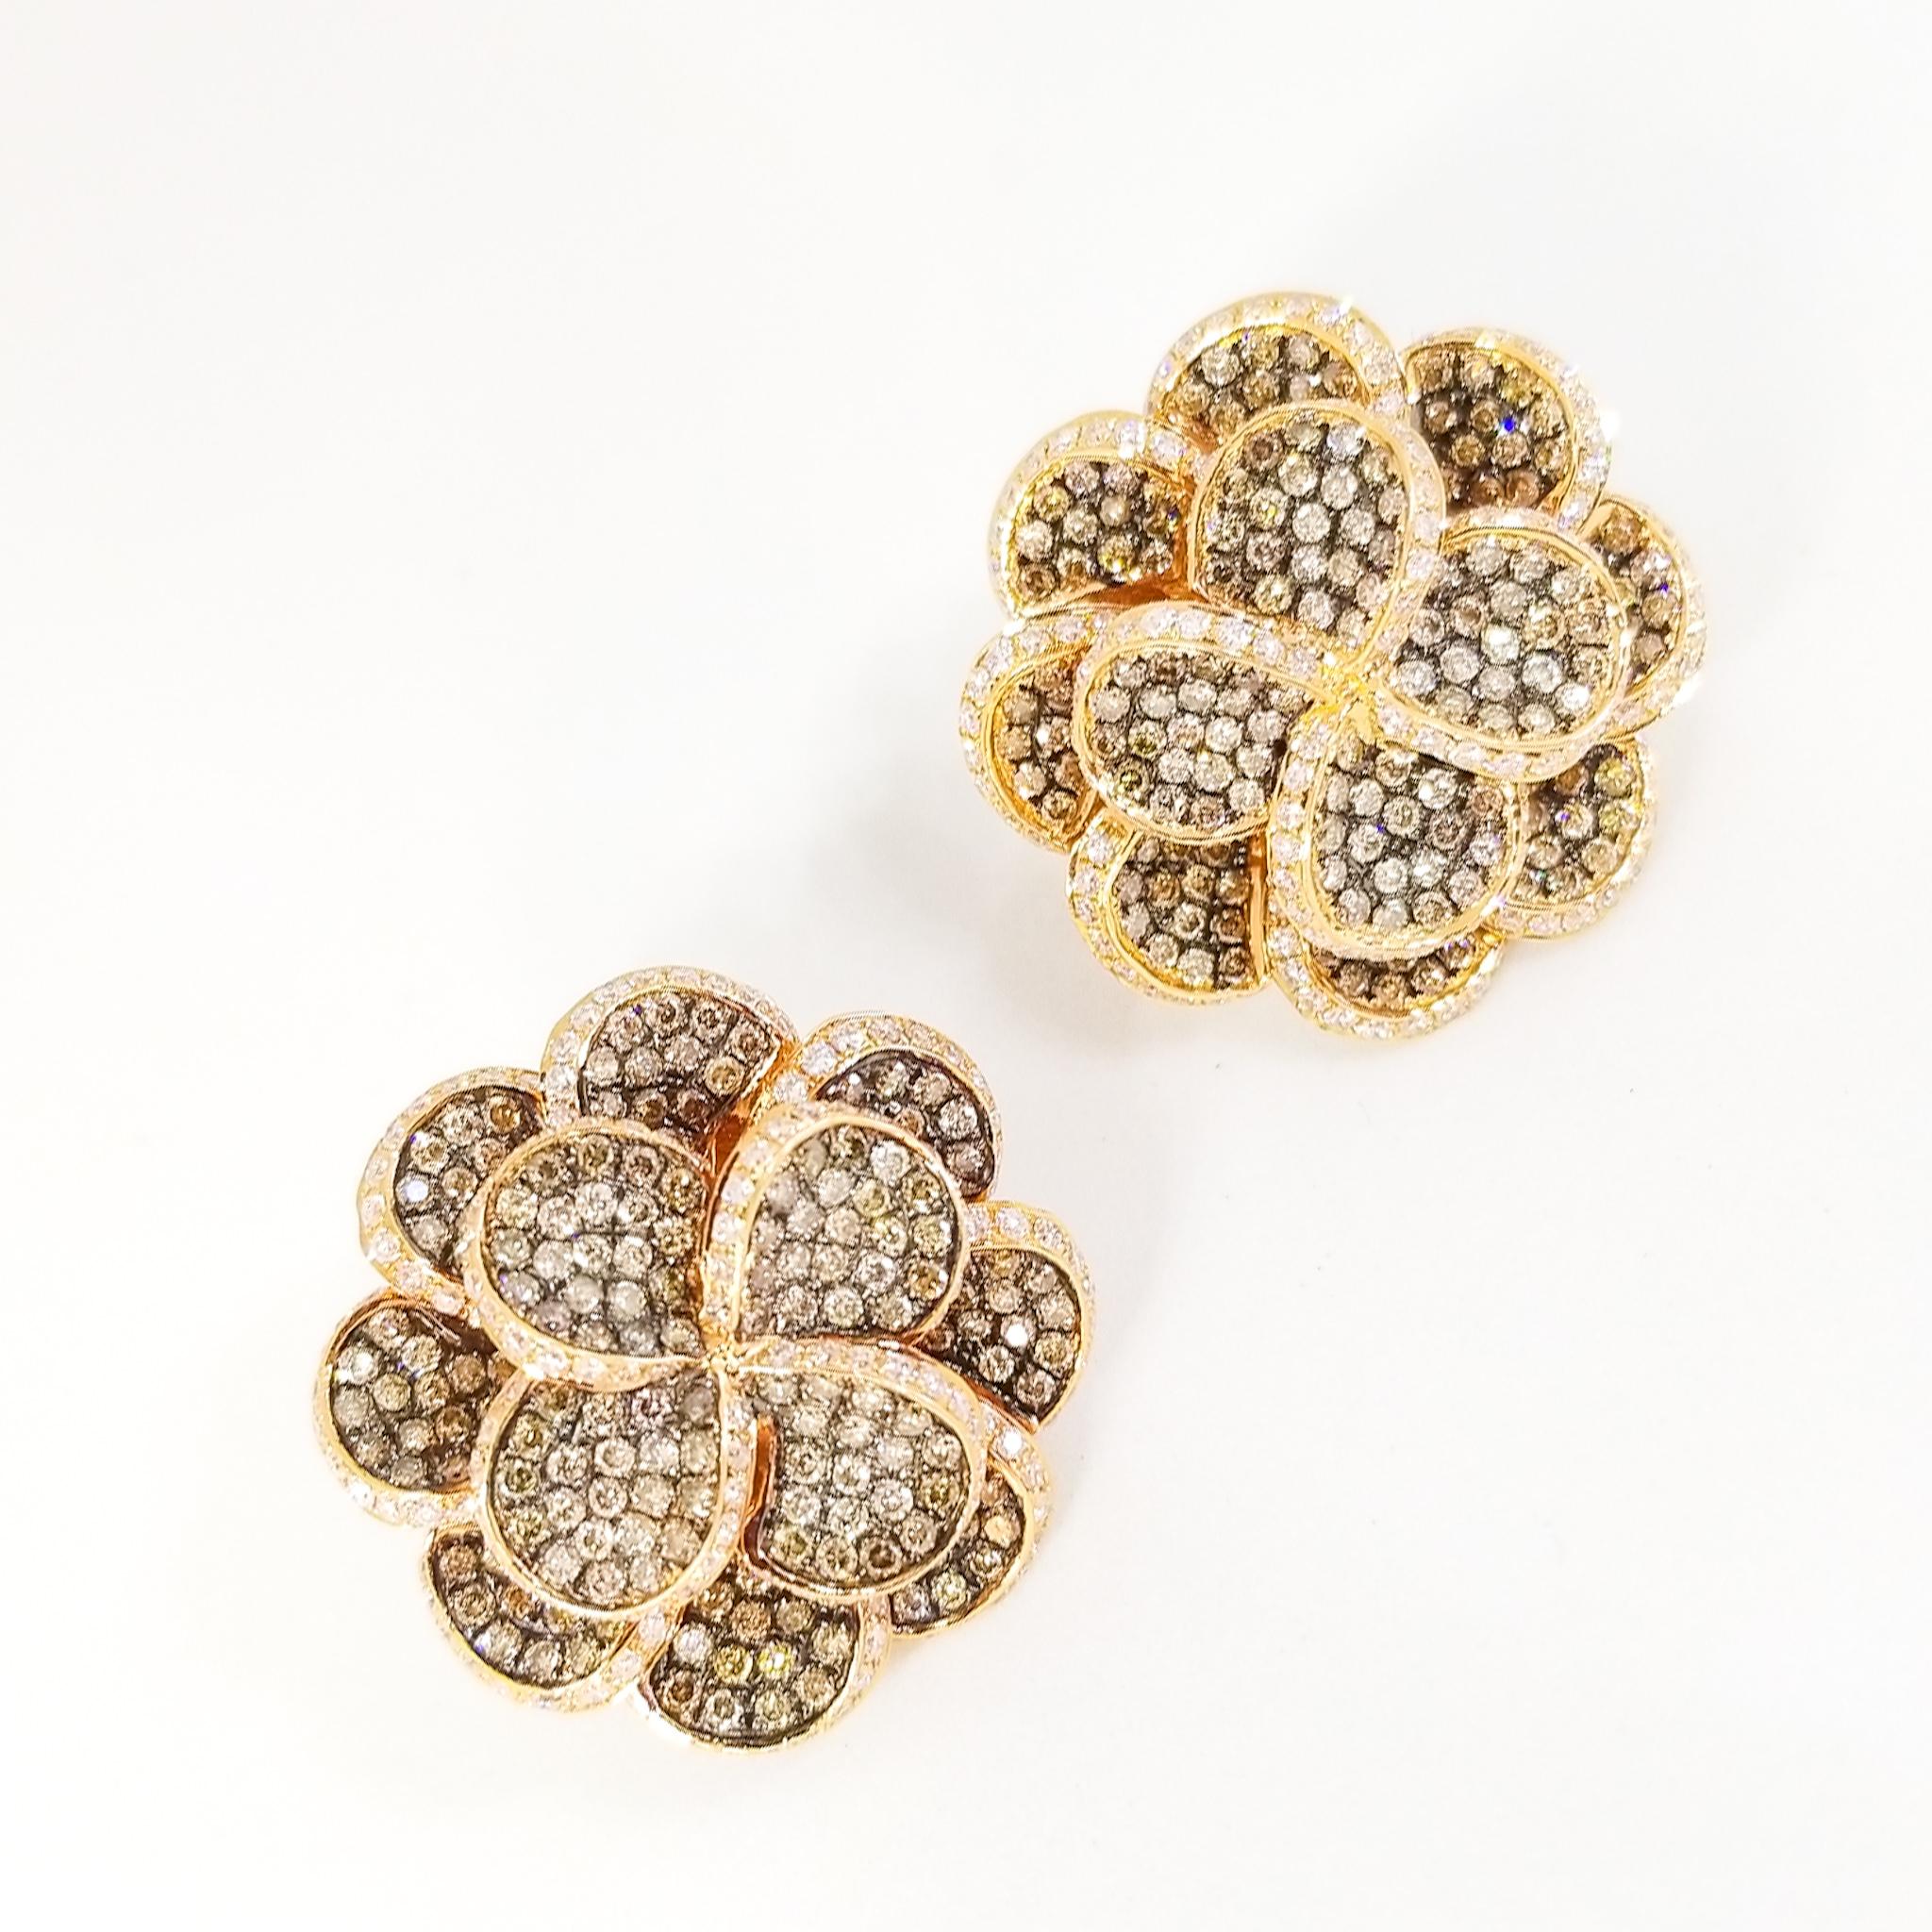 Dieses atemberaubende Paar Cluster-Ohrringe in Cognac-Schokoladenbraun und weißen Diamanten ist aus 18 Karat Roségold mit kostbaren schwarzen Rhodium-Akzenten gefertigt. Die Ohrringe mit Blumenmotiv sind mit dreihundertachtundneunzig runden, braunen